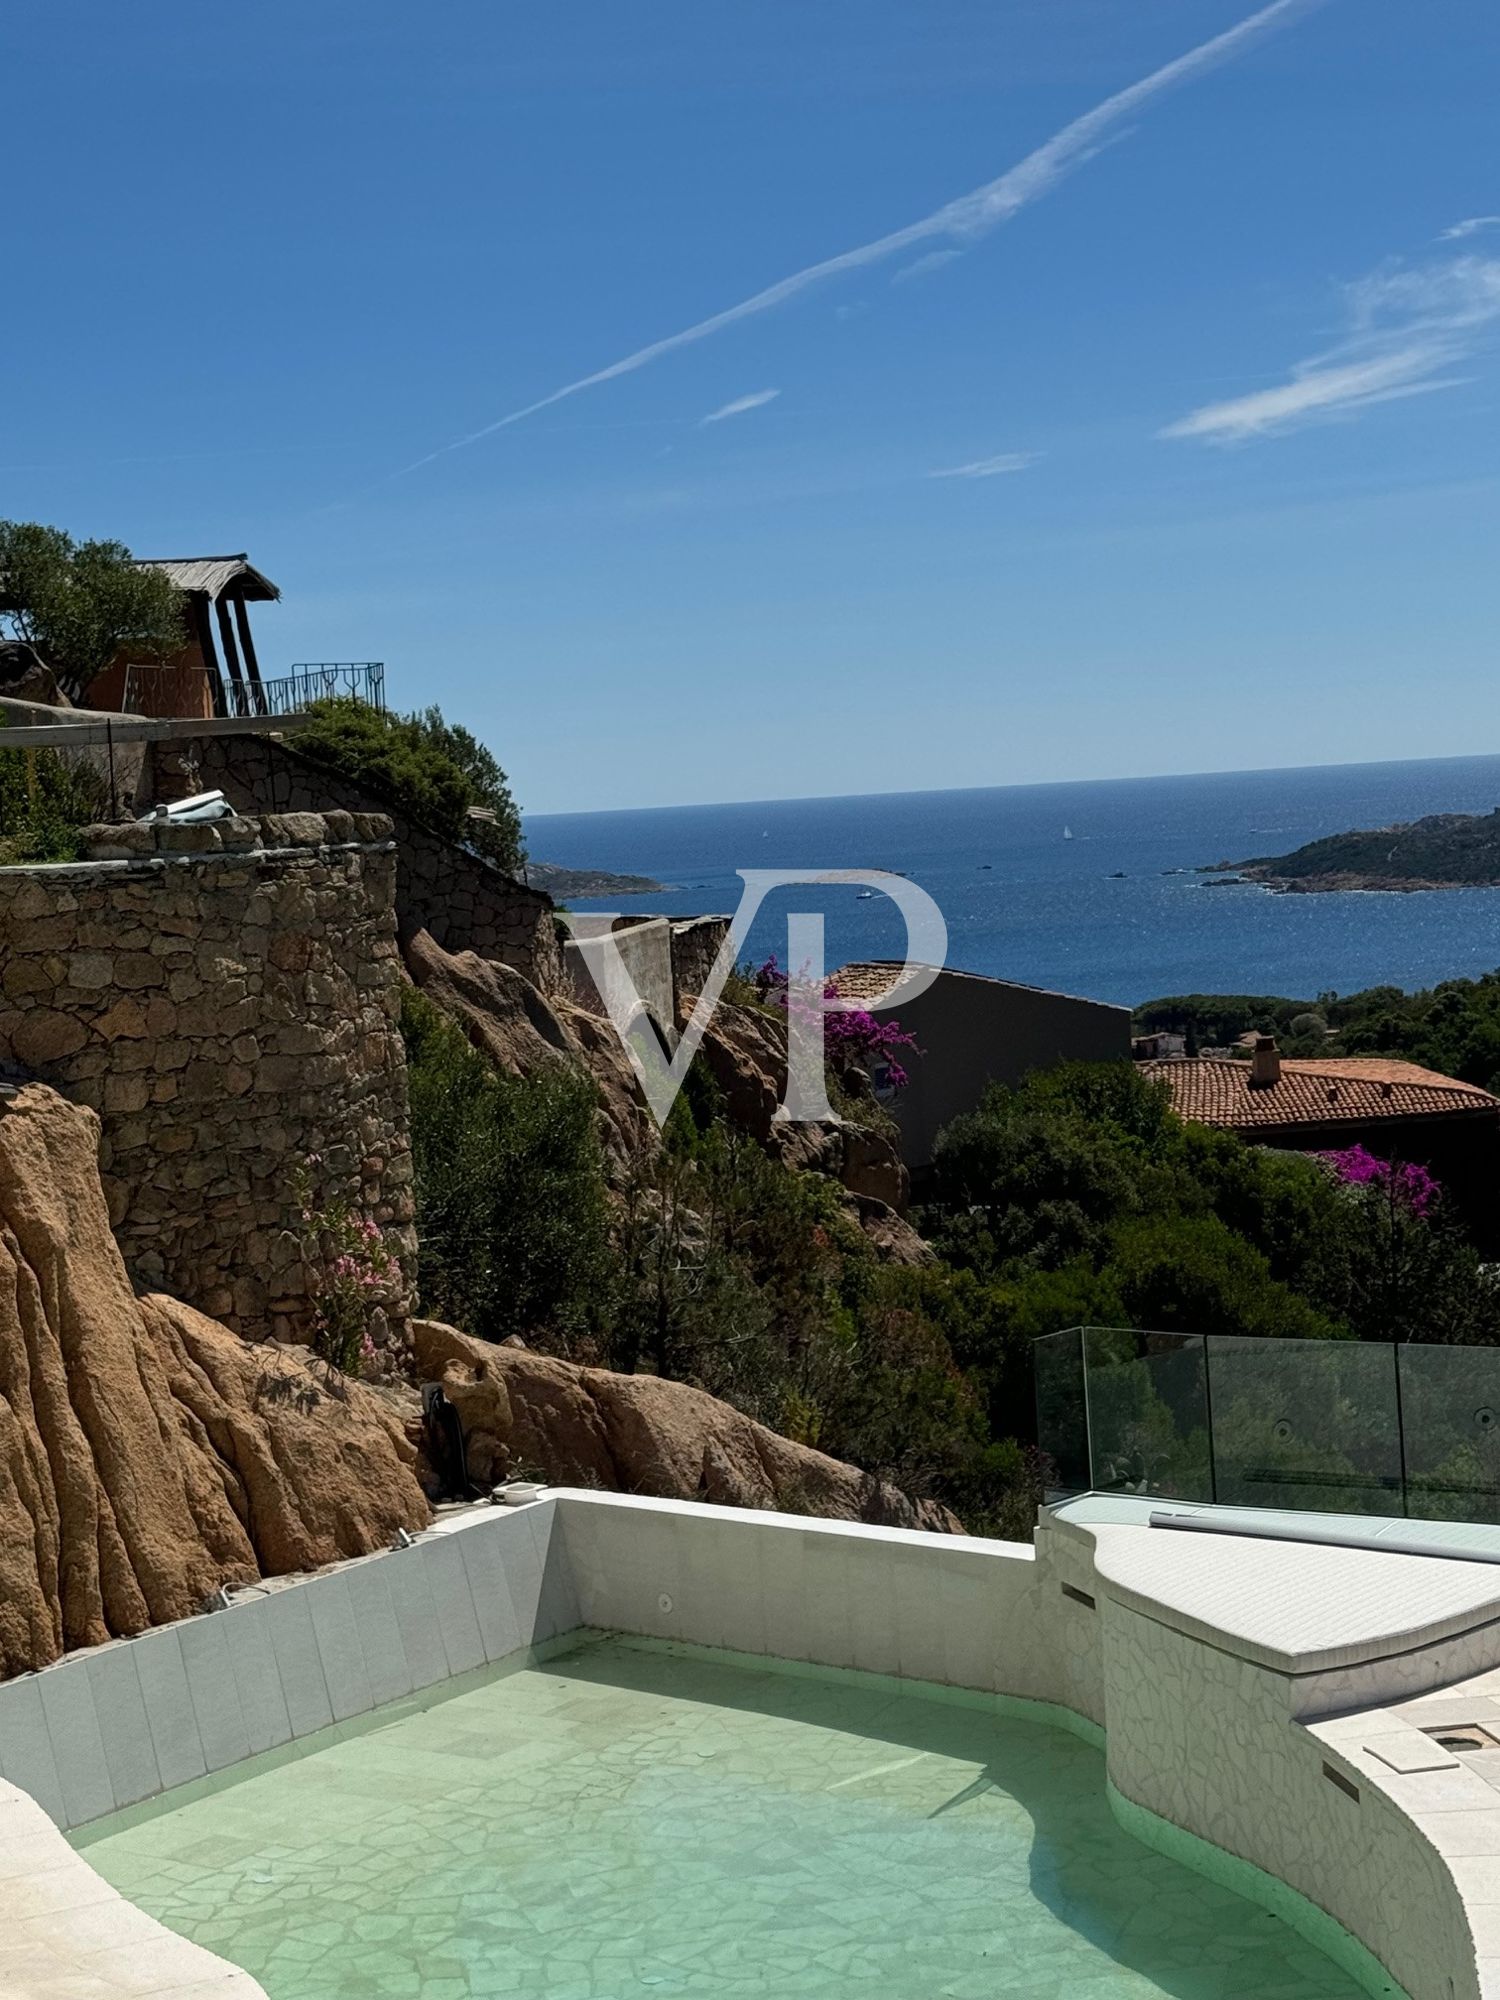 Pantogia, Sardinia: Prestigious villa with breathtaking sea views